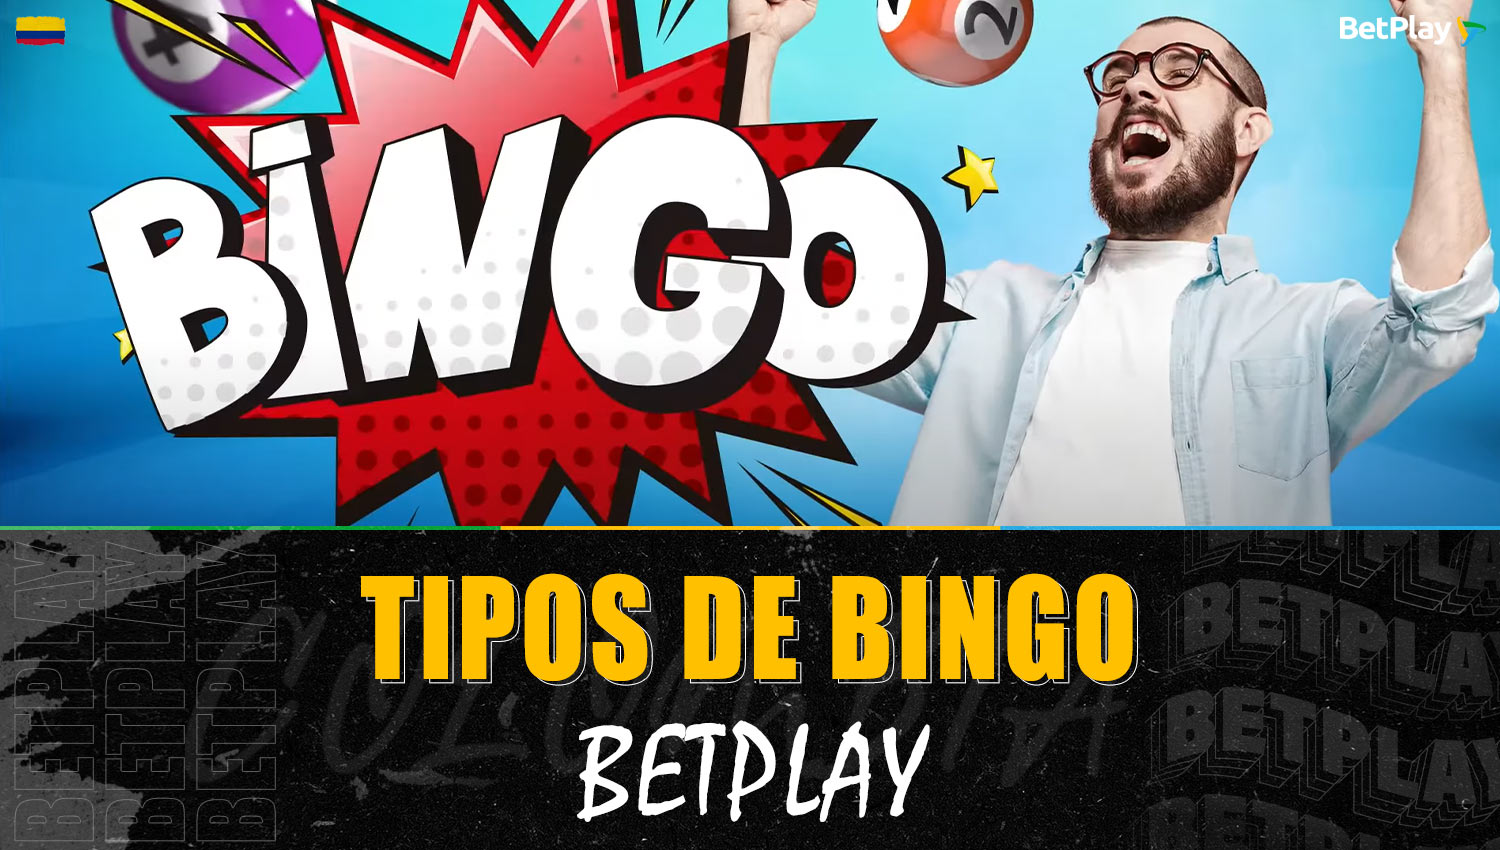 En la plataforma Betplay se ofrecen 3 tipos de juego de "Bingo" para los jugadores colombianos